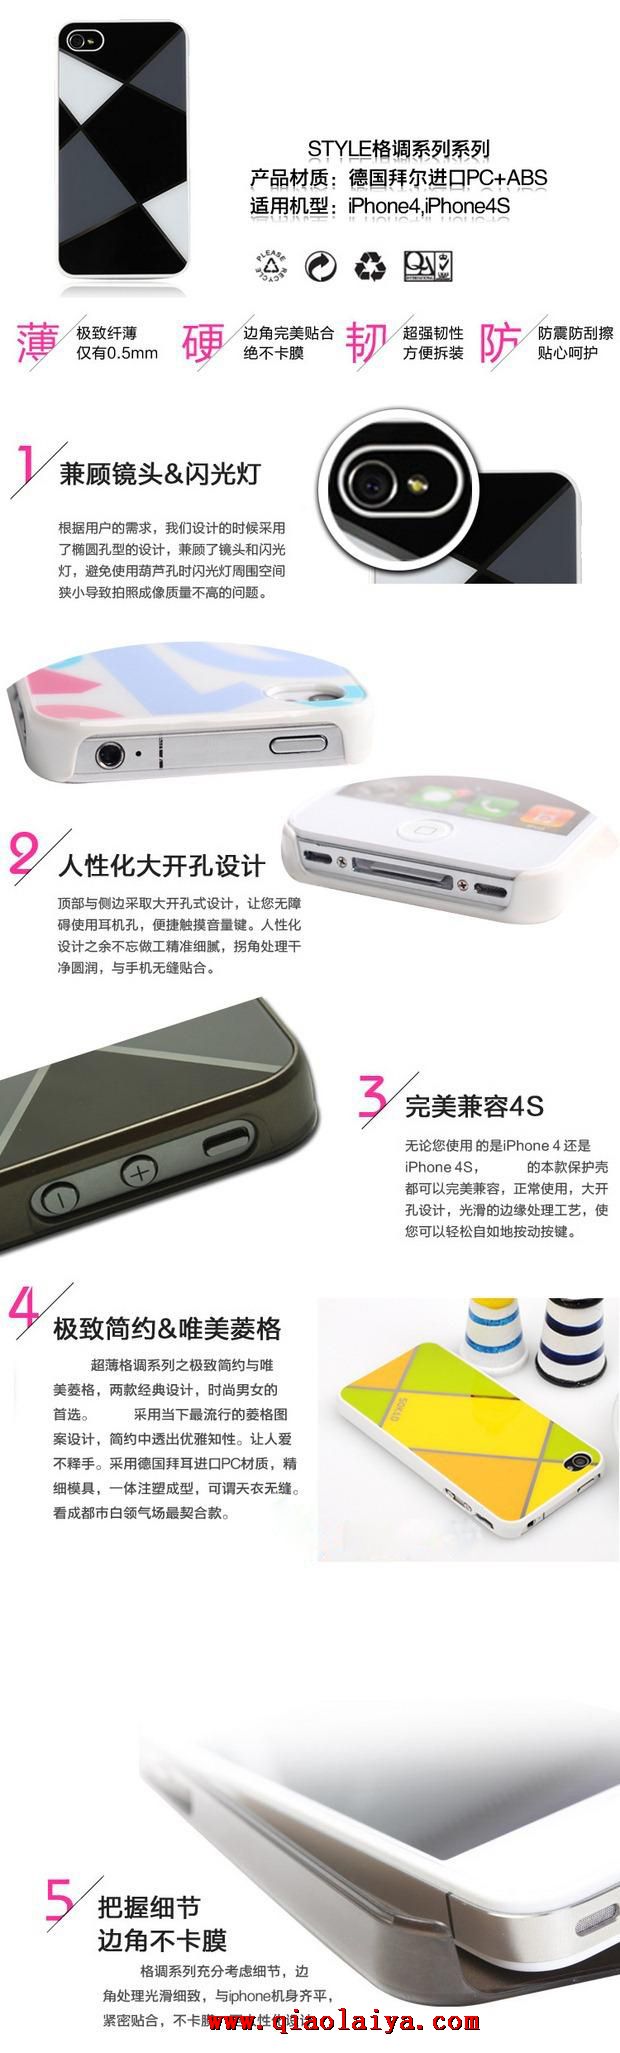 D'Apple 4s étui de téléphone Le nouveau manchon de protection iphone4 Coque de protection